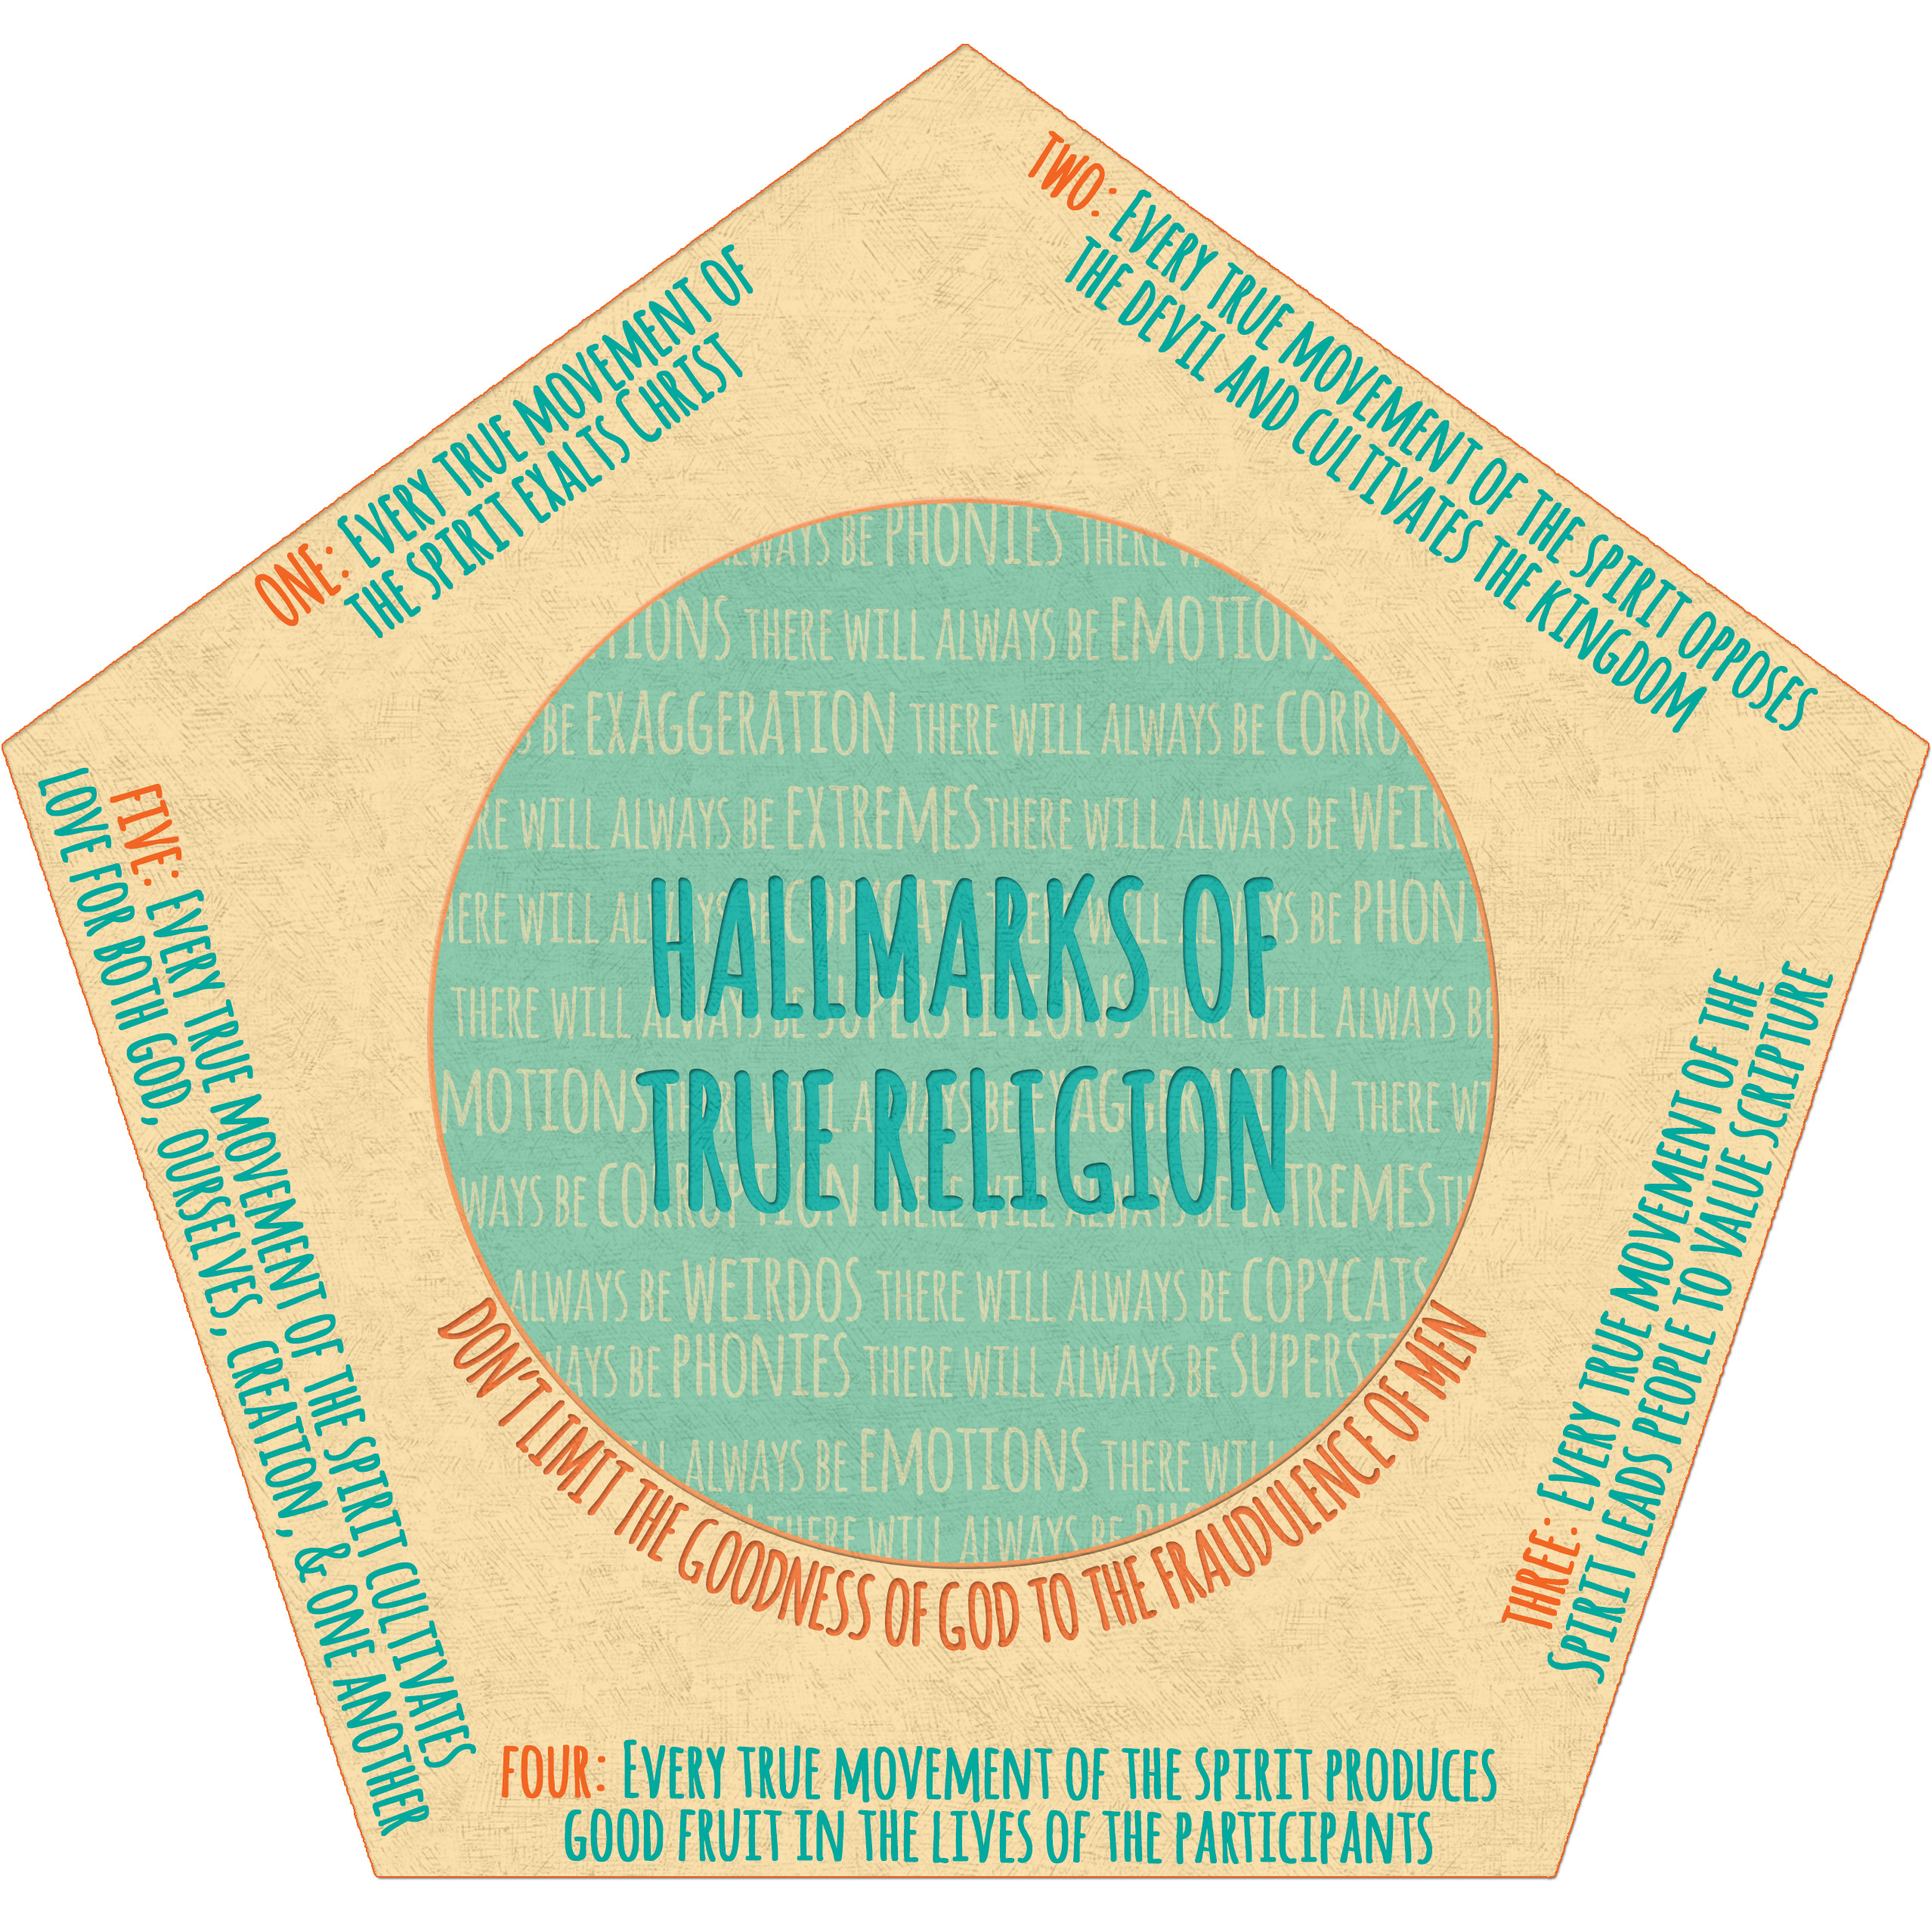 Hallmarks of true religion